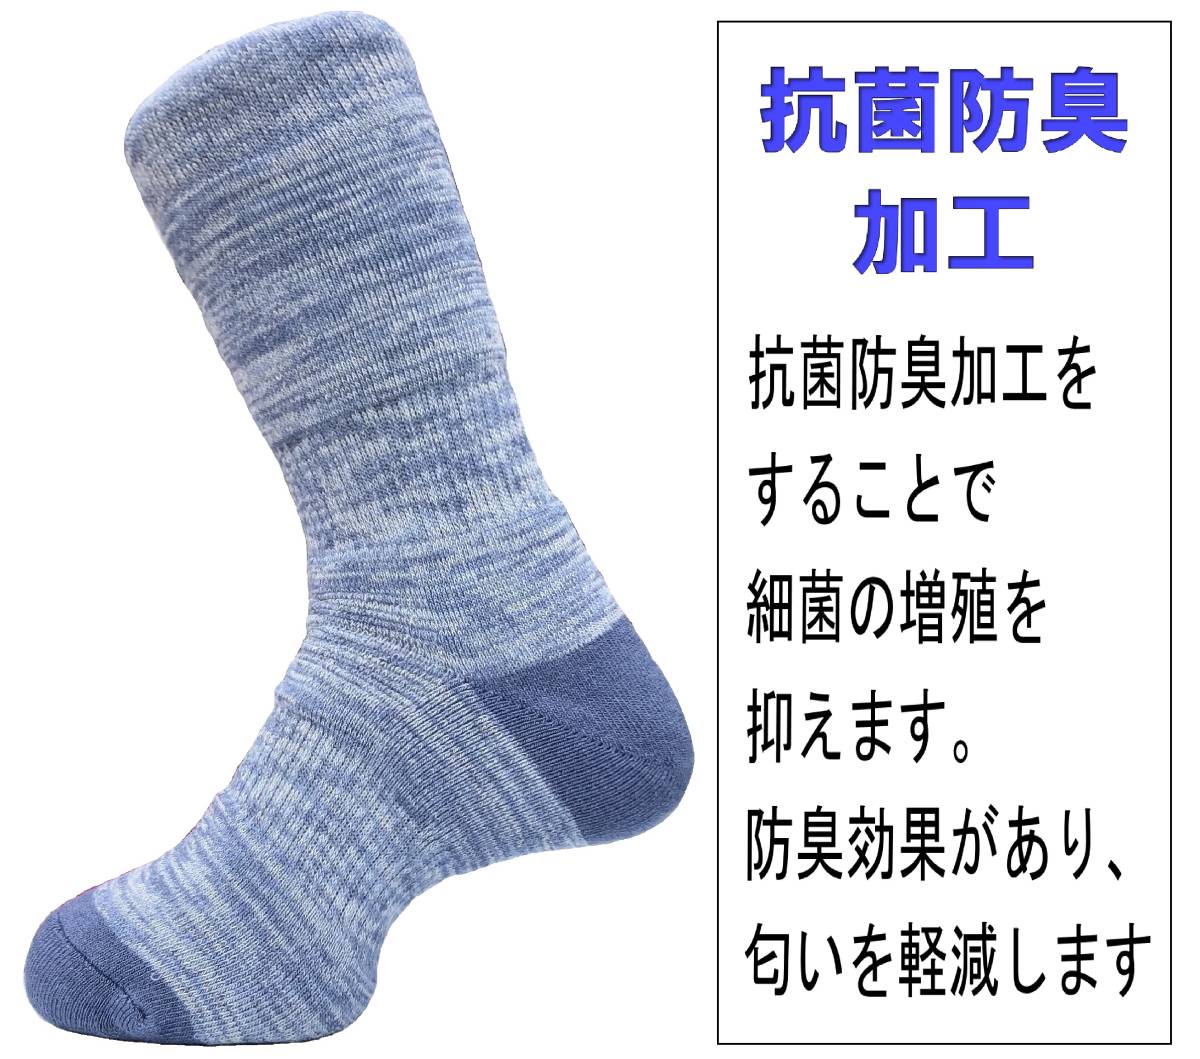 【送料込】日本製 トレッキングソックス 25-27cm 2足1セット ブルー 抗菌防臭機能付_画像4